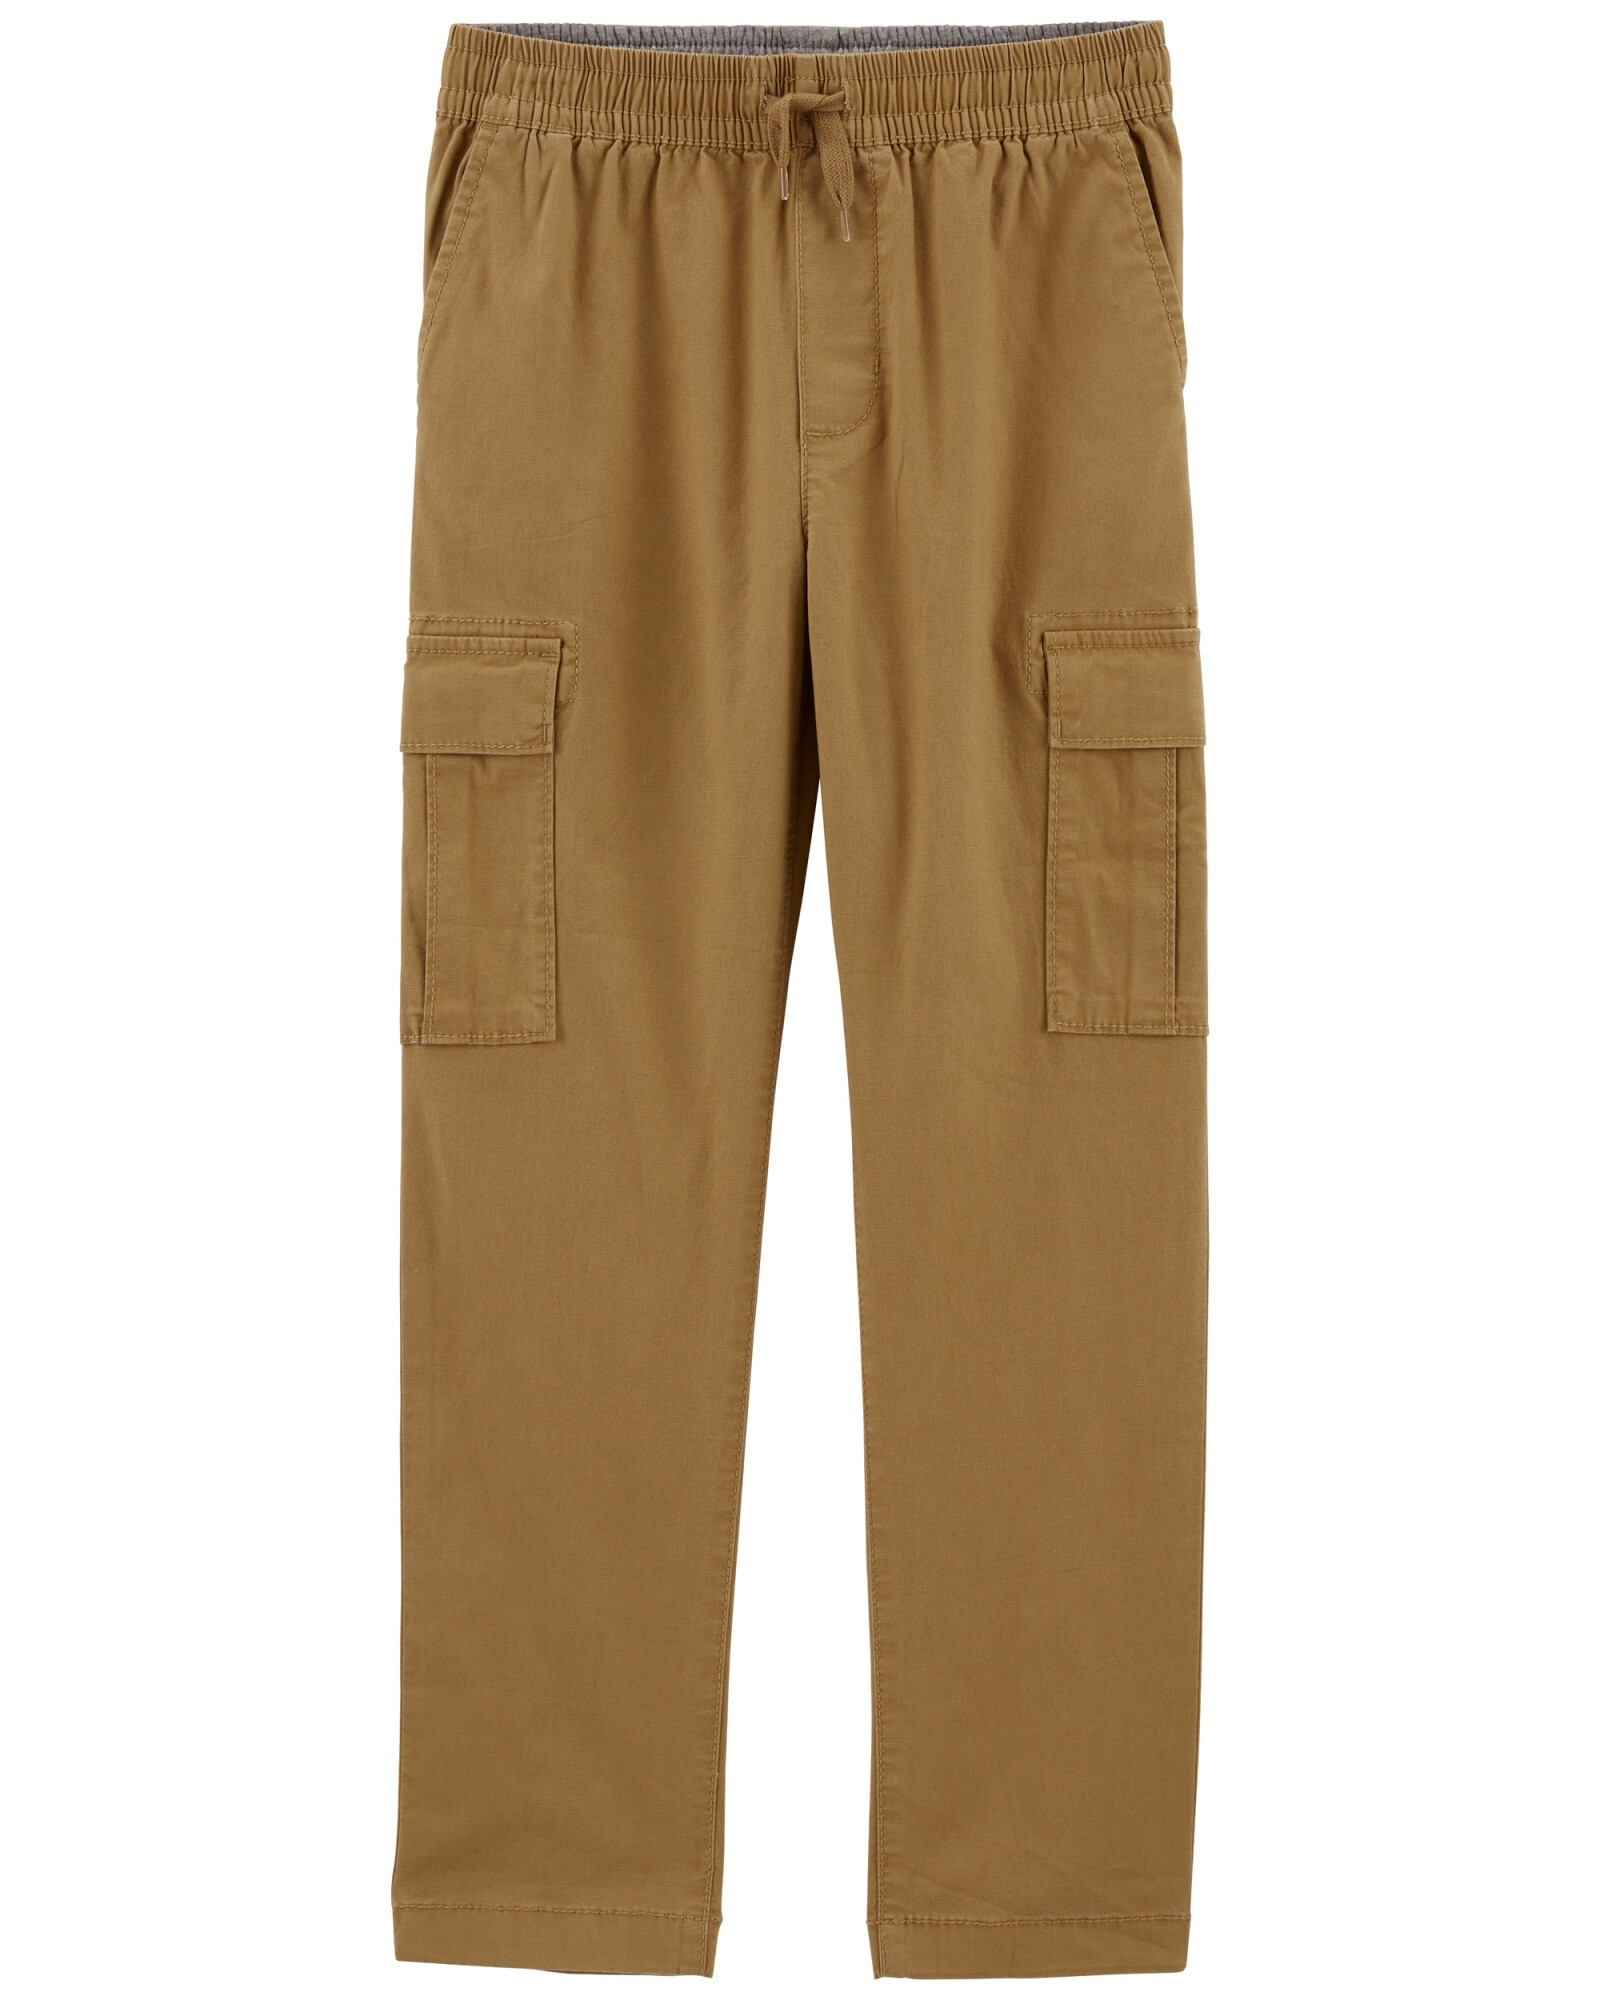 Pantalón cargo de lona, khaki. Talles 6-14 Sin color